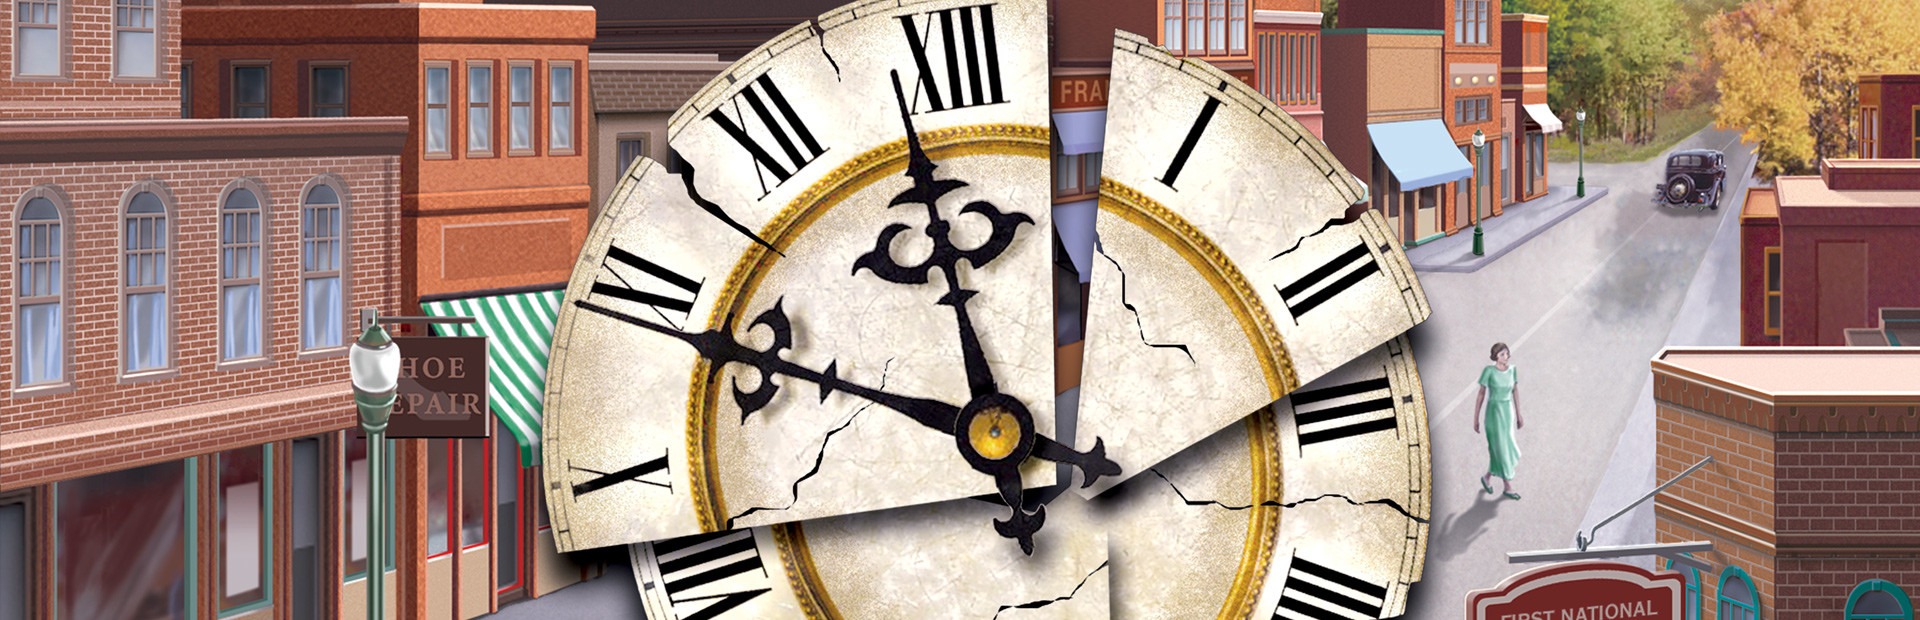 Тайна старых часов. Nancy Drew Secret of the old Clock обложка. Тайна старинных часов.